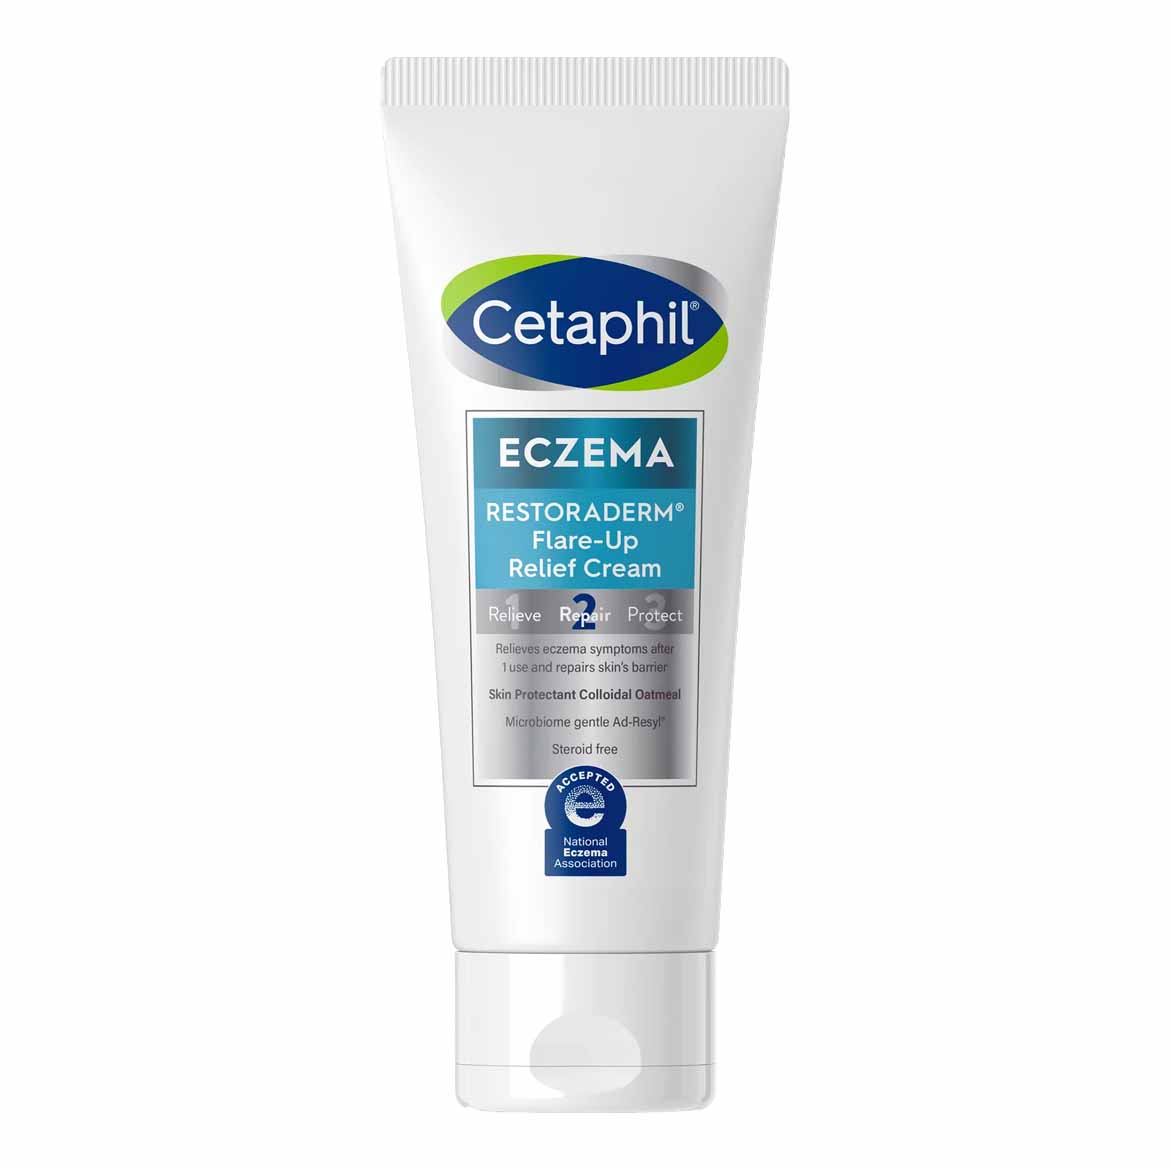 Cetaphil Eczema Relief Cream for flare-ups